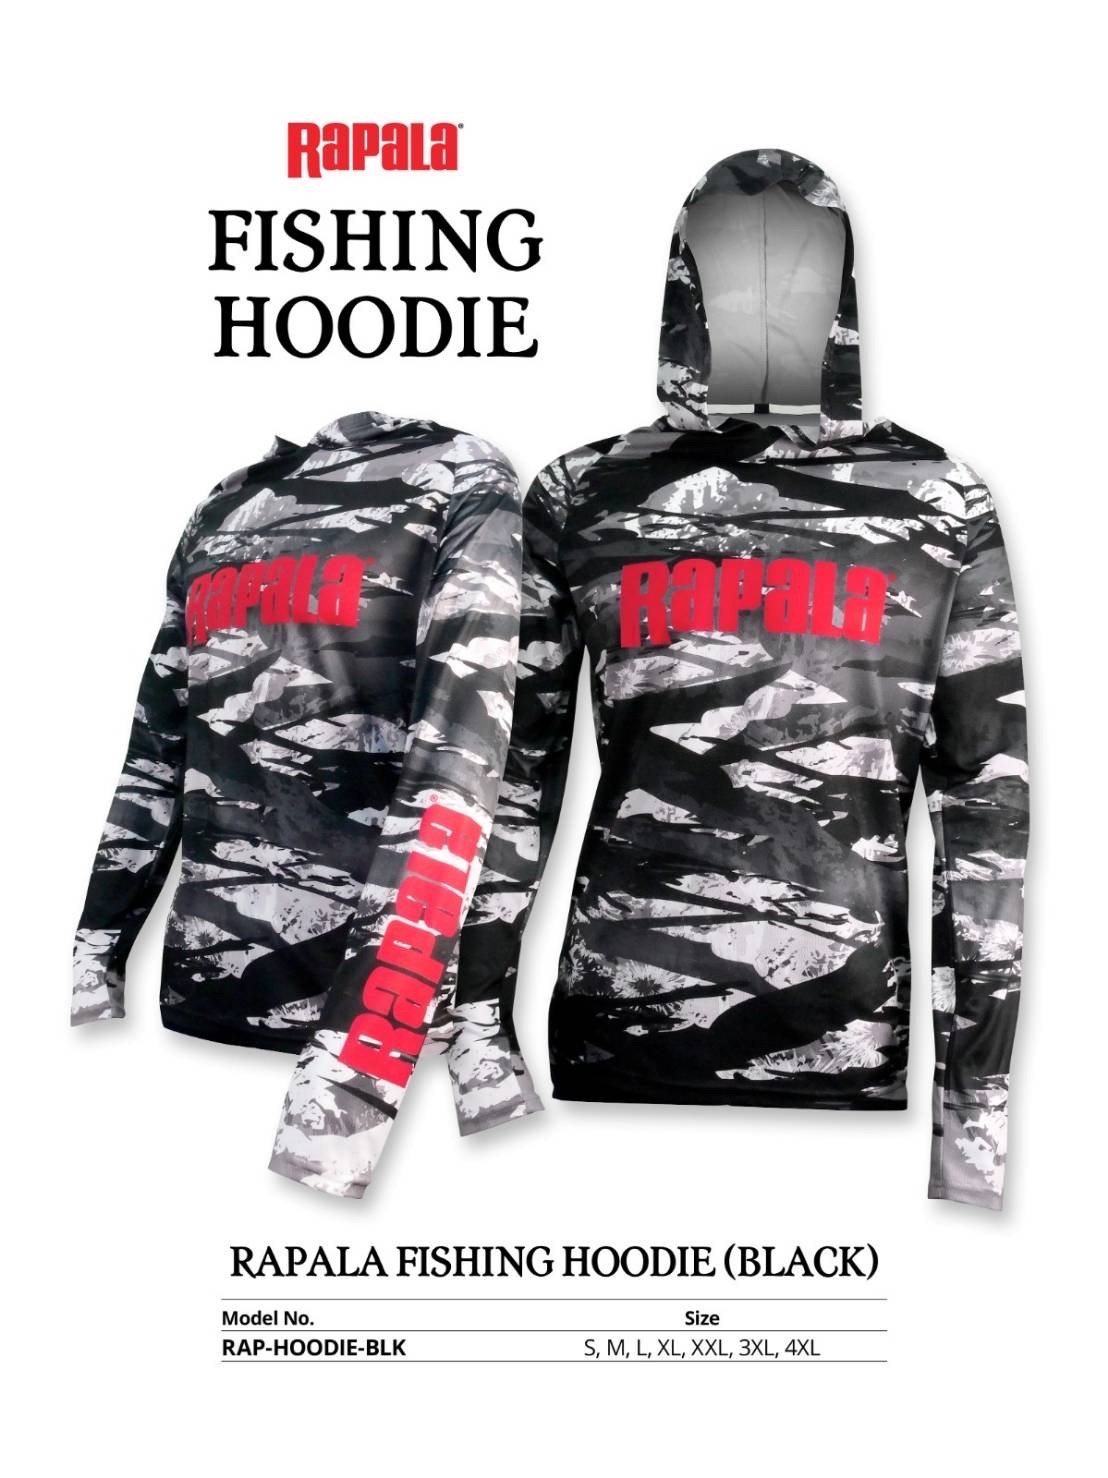 Rapala Fishing Hoodie Black